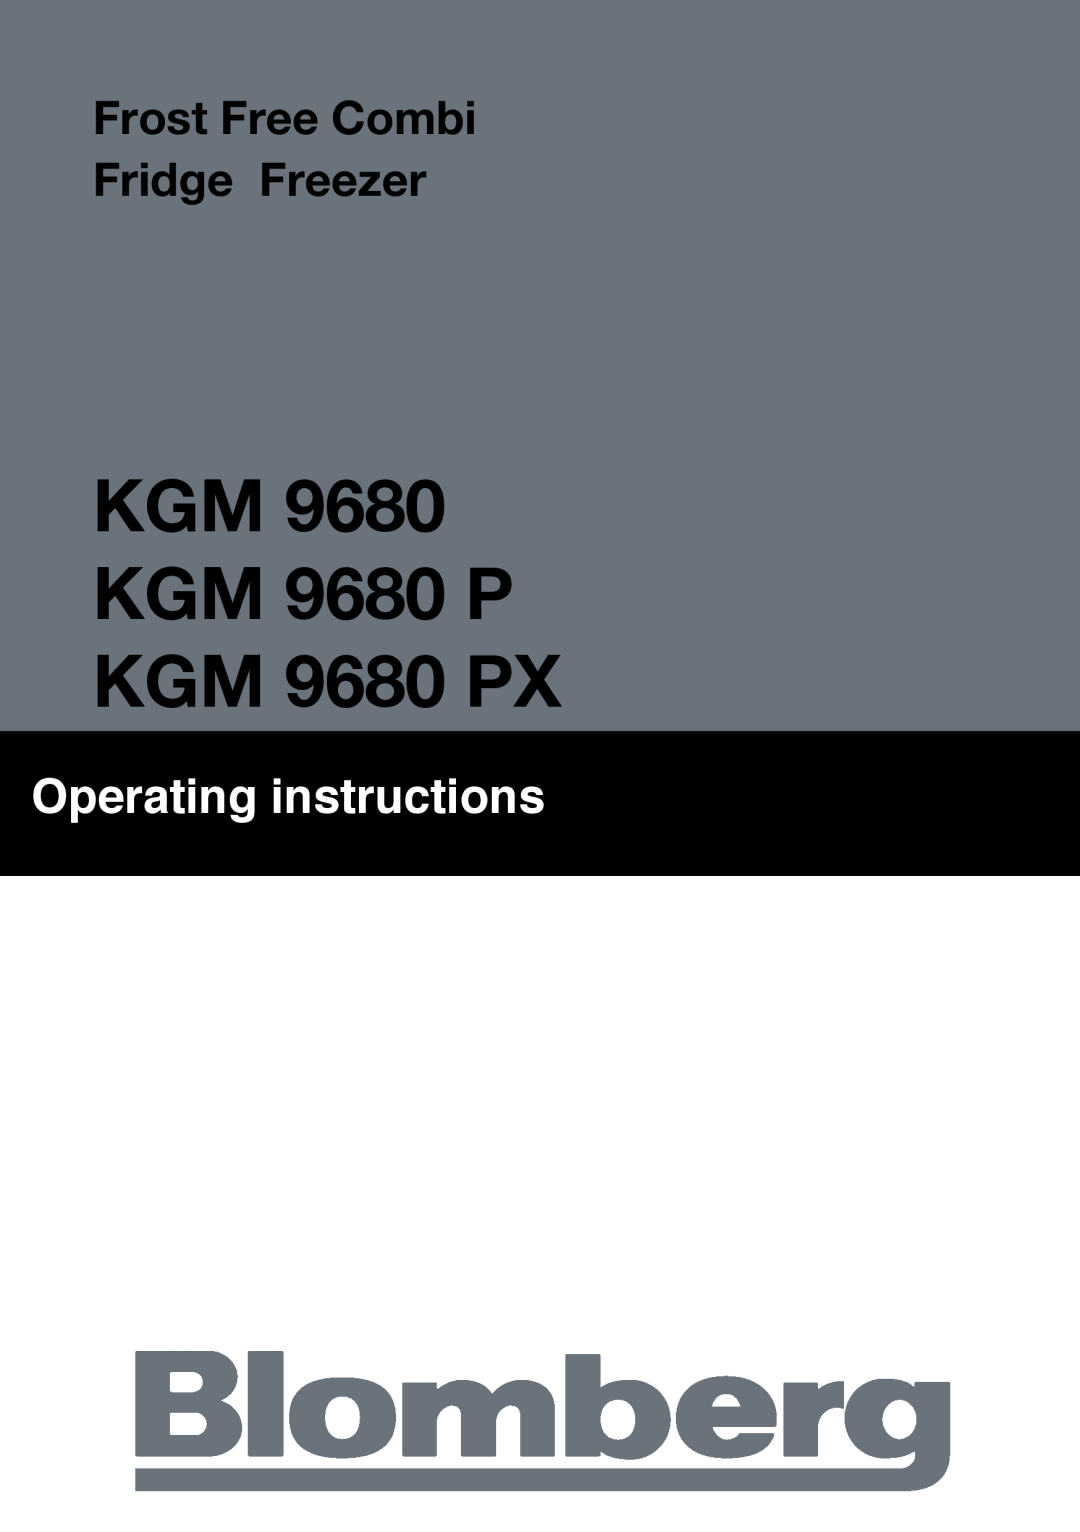 Blomberg manual KGM 9680 KGM 9680 P KGM 9680 PX, Operating instructions, Frost Free Combi Fridge Freezer 